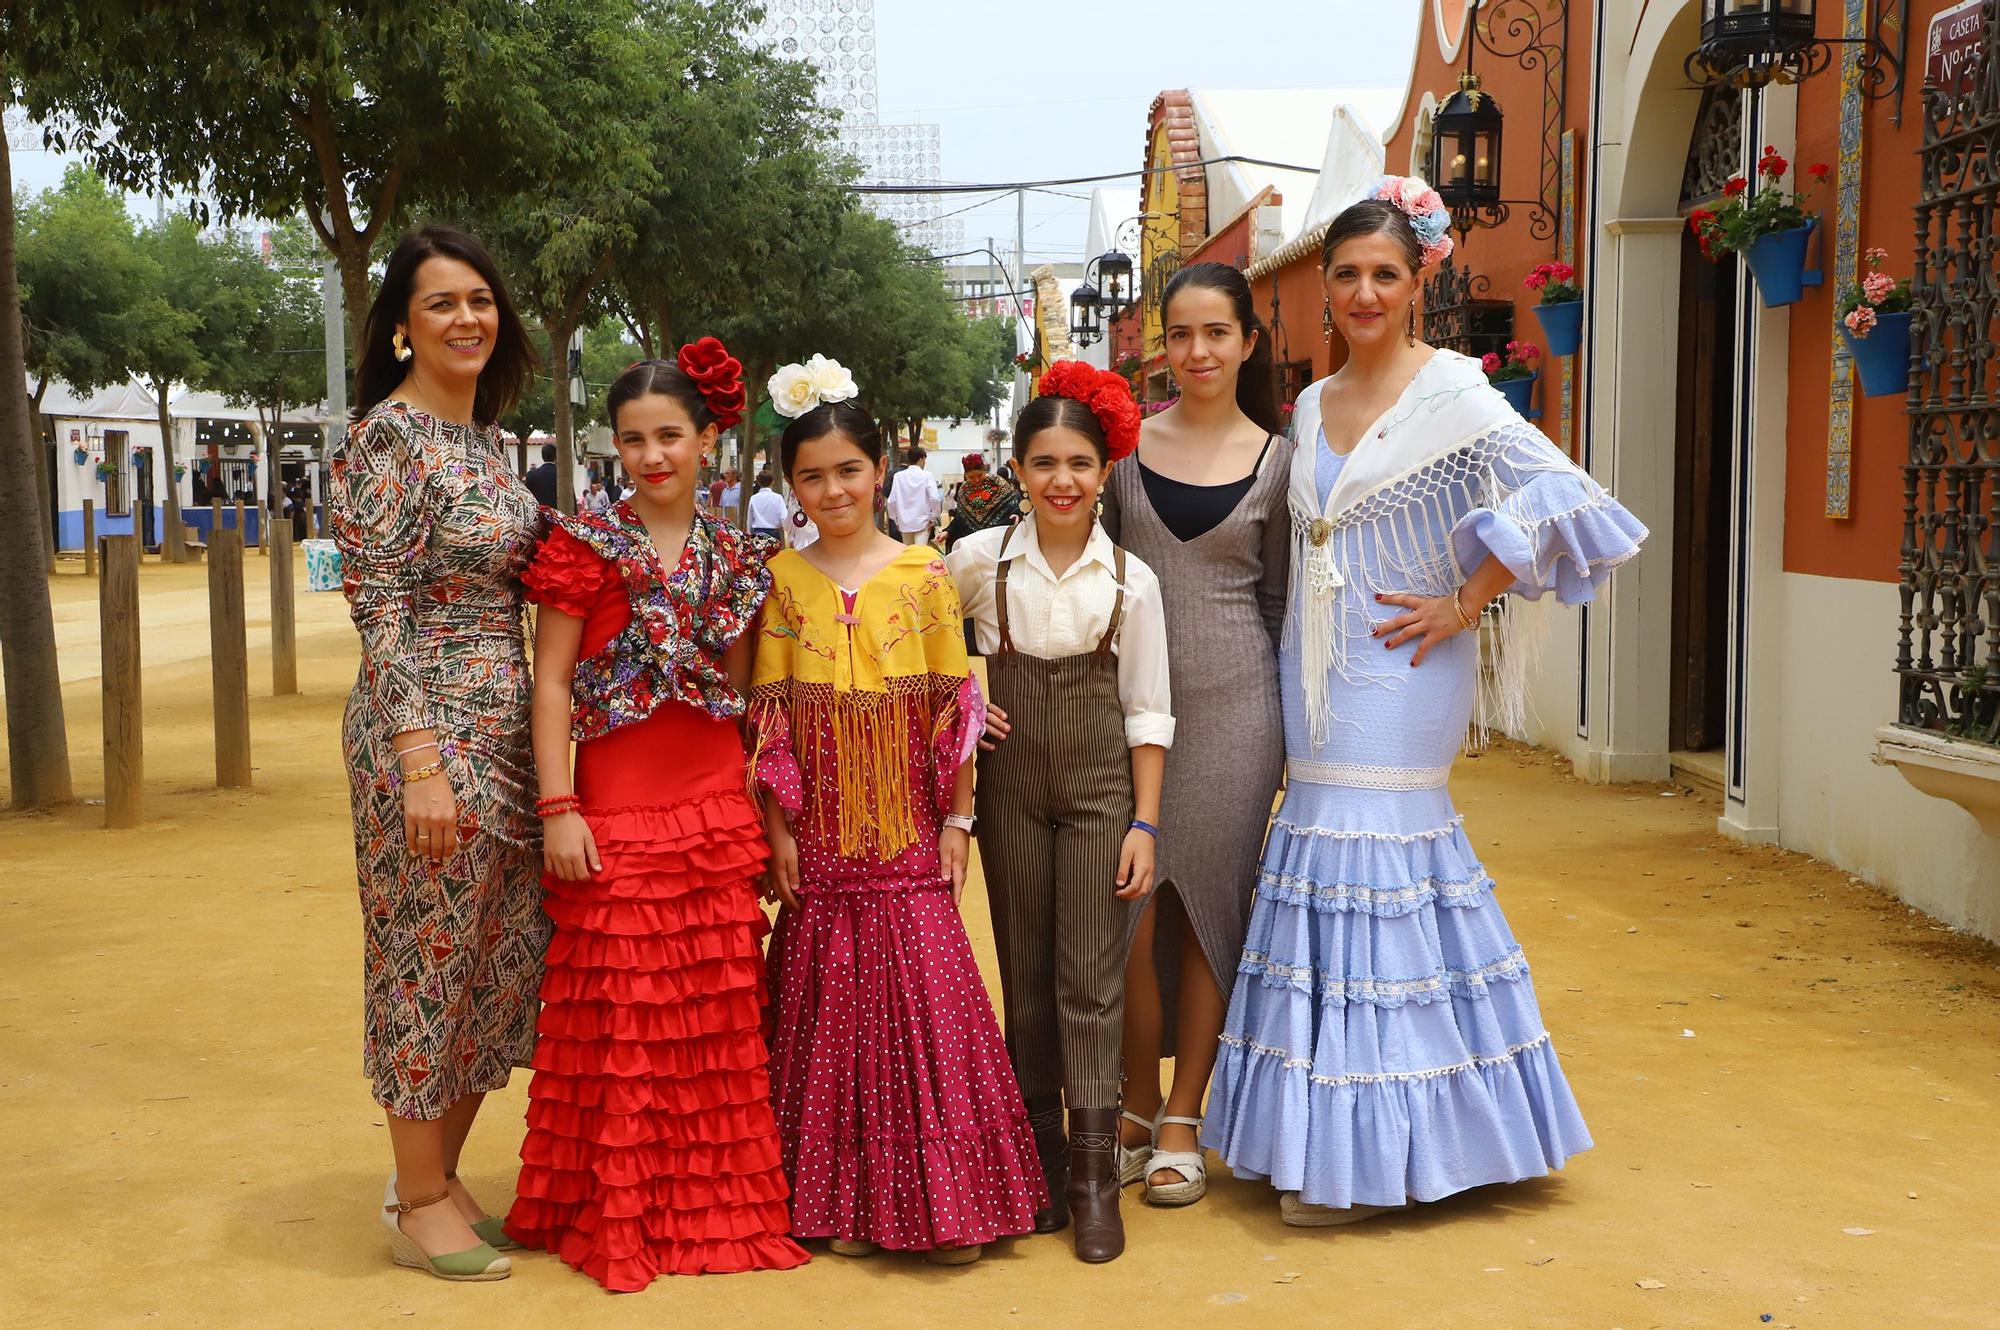 Amigos y familiares en El Arenal el domingo de Feria